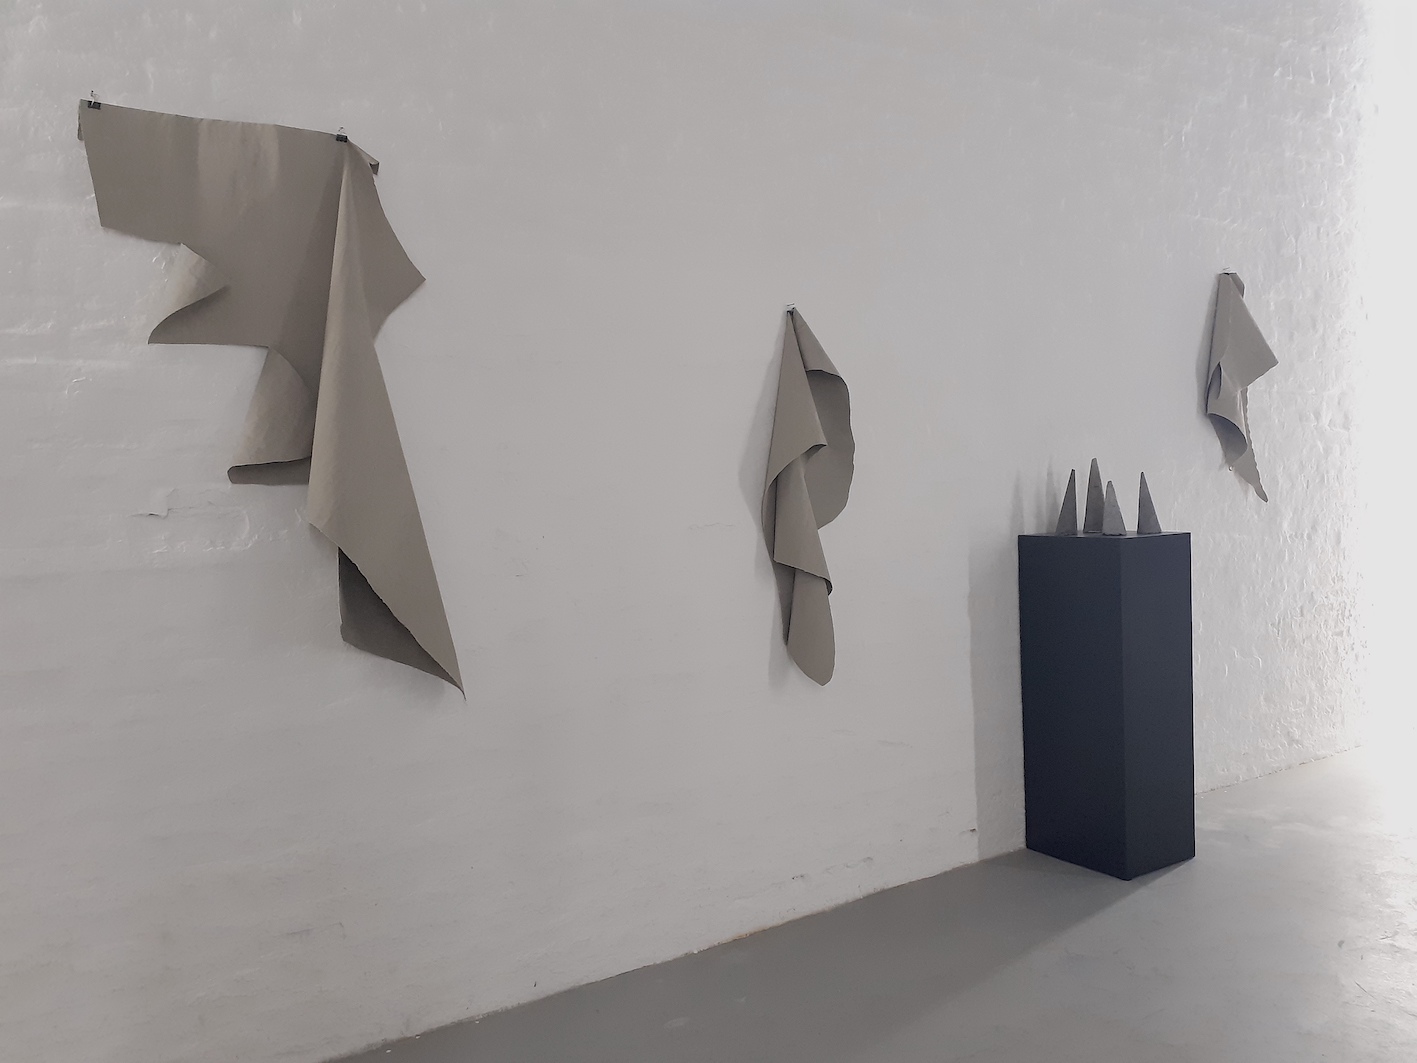 Together We Stand, installation view, Alessandro Biggio, 2020 courtesy Galleria Michela Rizzo